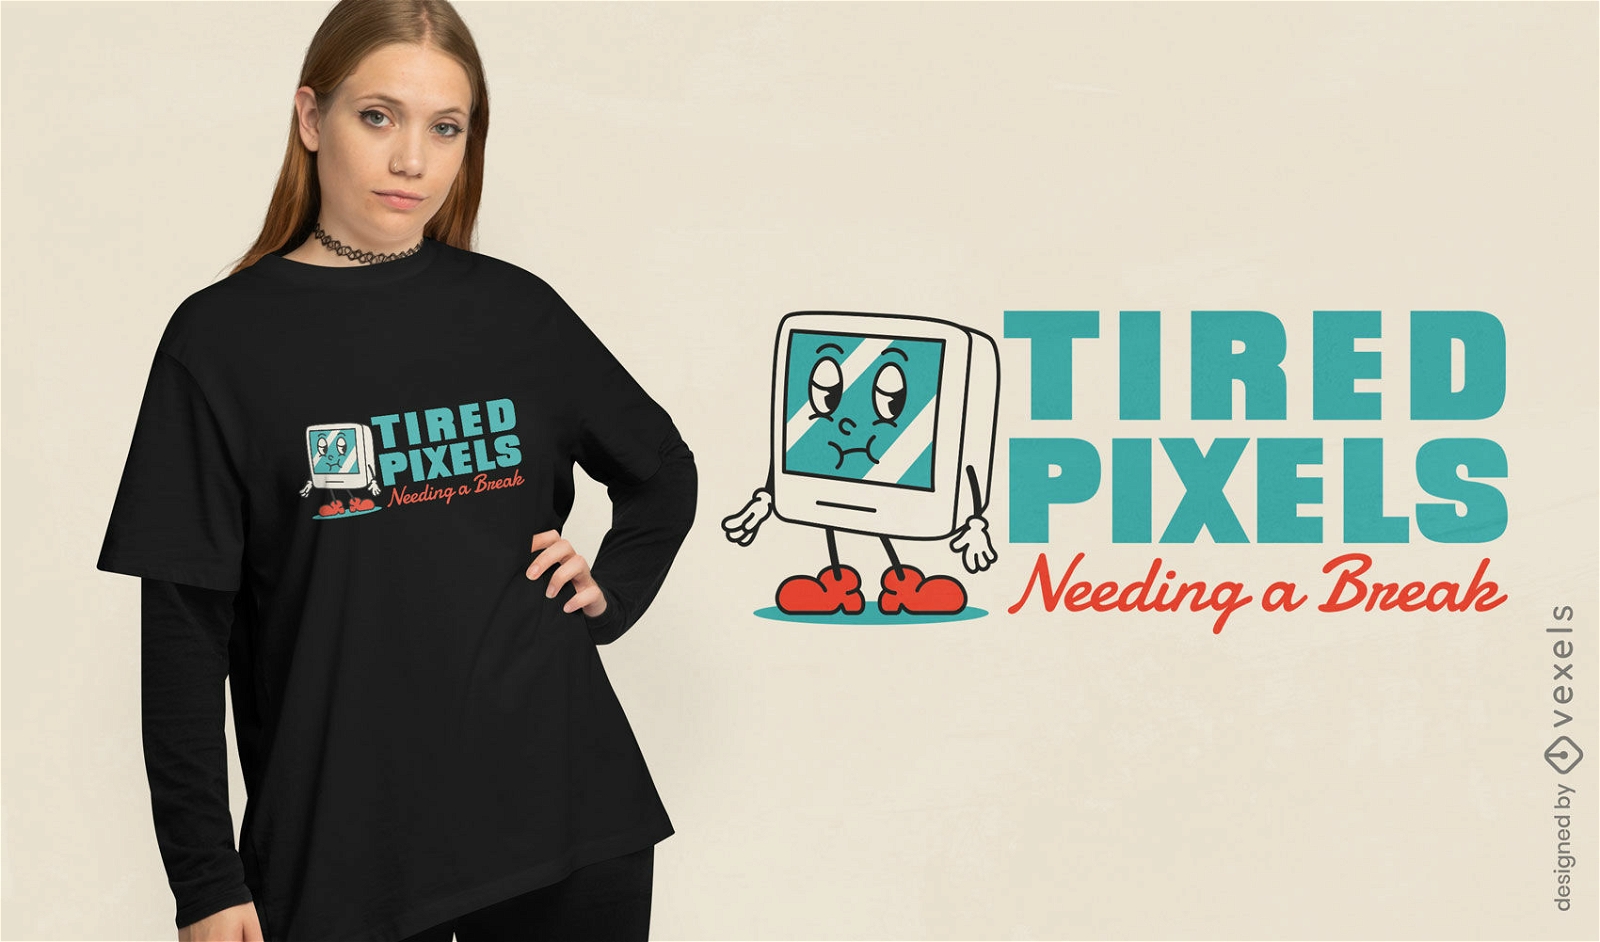 M?de Pixel brauchen ein Pausen-T-Shirt-Design